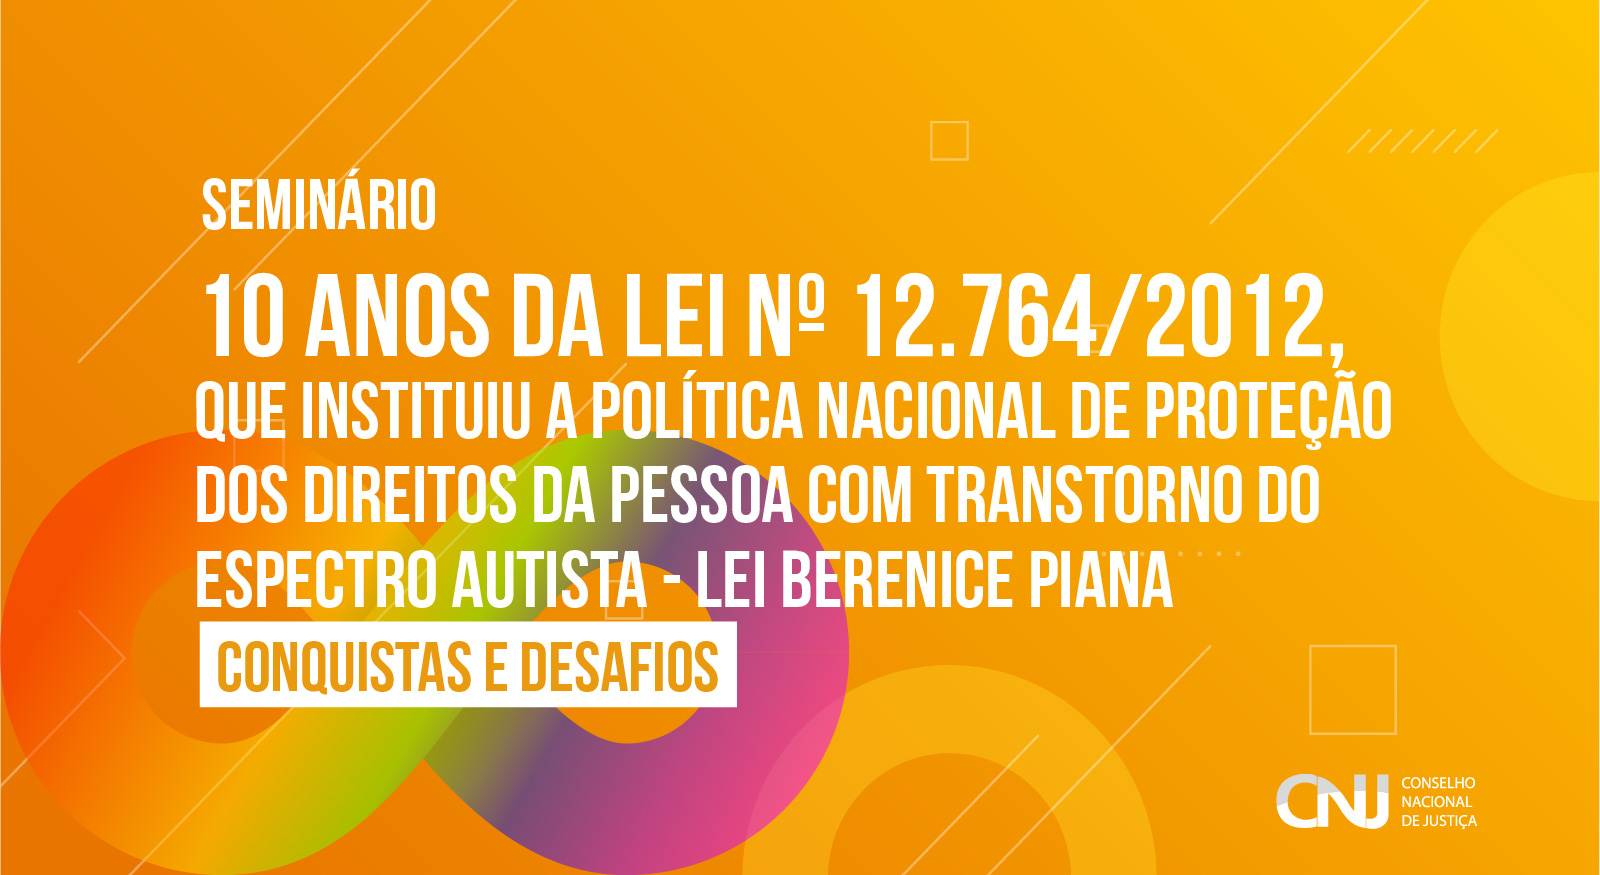 INSTITUCIONAL: Inscrições abertas para seminário do CNJ que debaterá conquistas e desafios nos 10 anos de vigência da Lei Berenice Piana - que trata dos direitos dos autistas